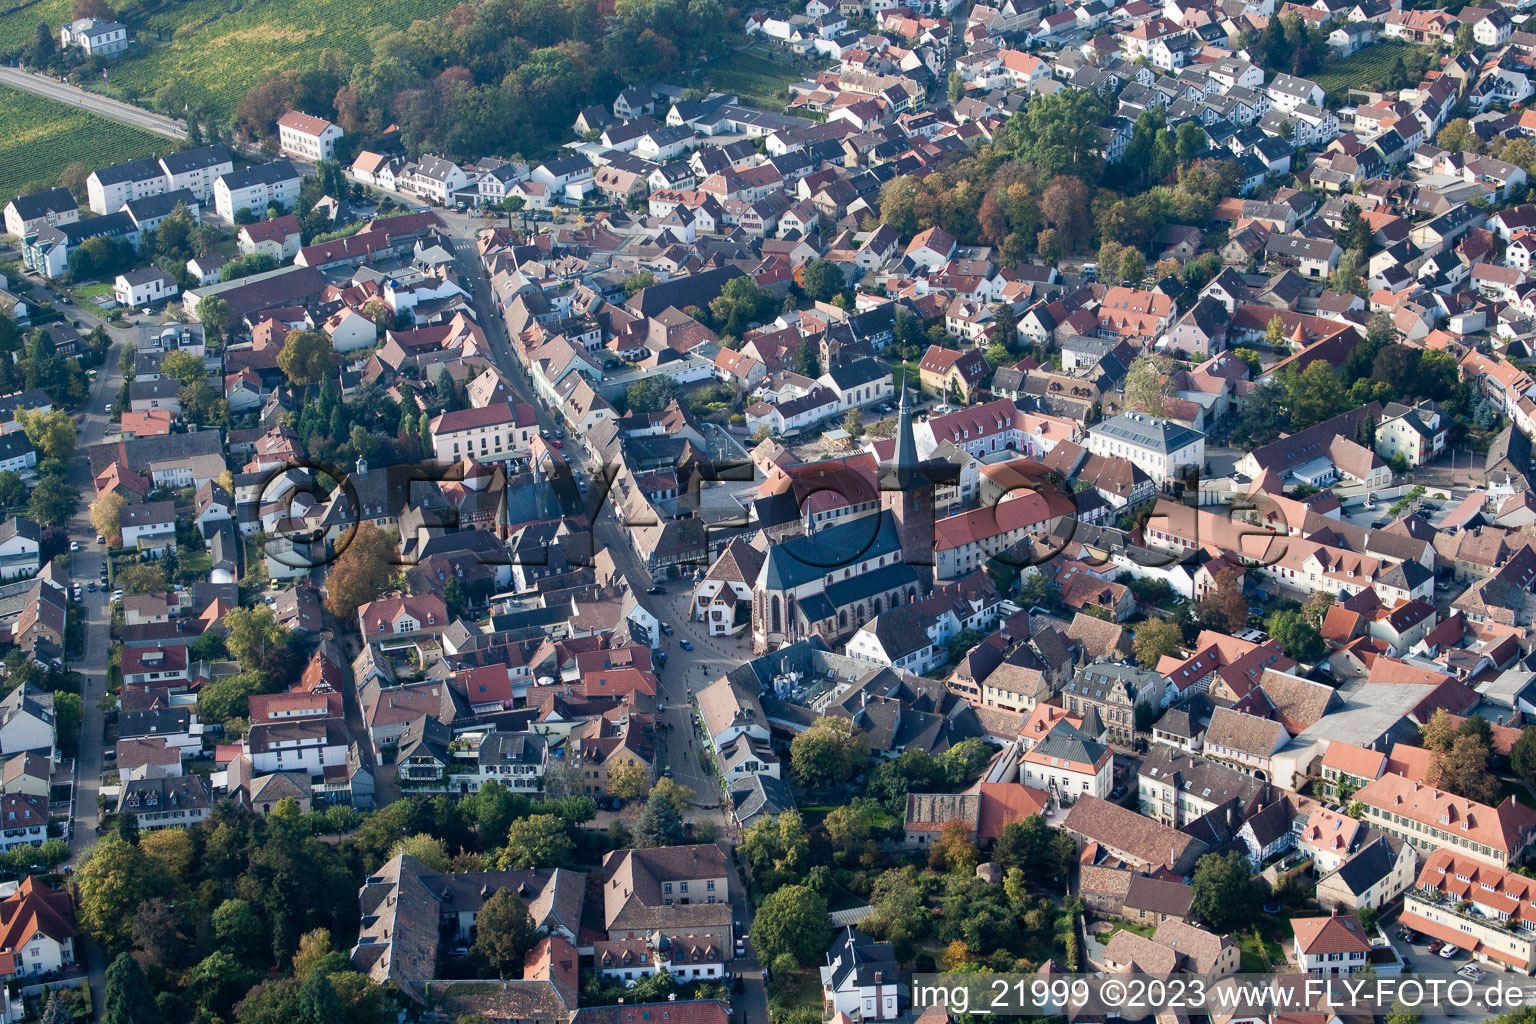 Deidesheim dans le département Rhénanie-Palatinat, Allemagne vue d'en haut